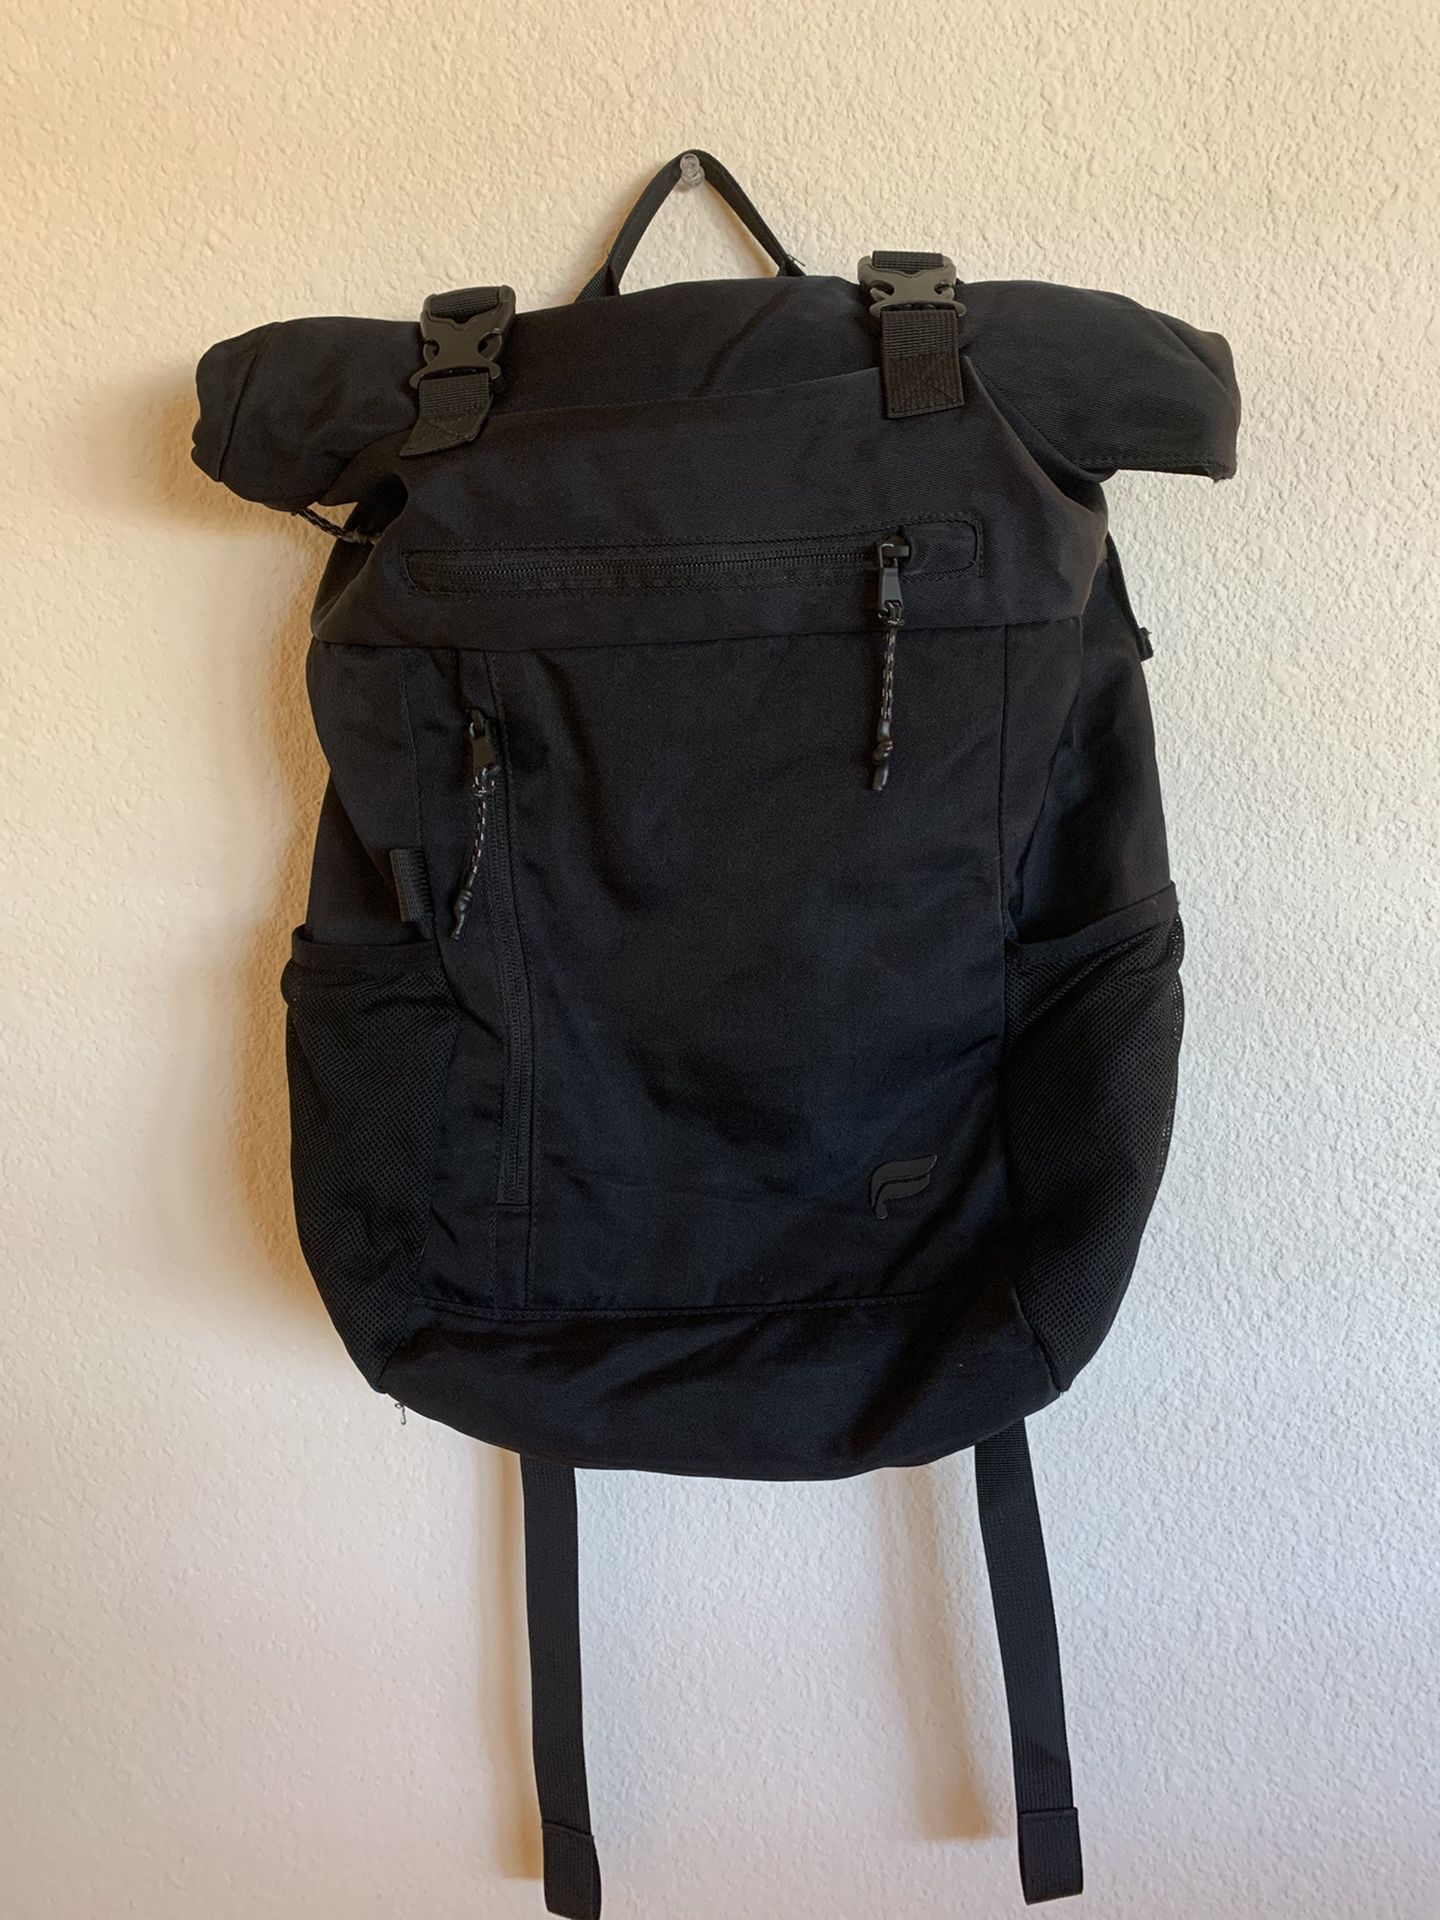 Black Fabletics Backpack